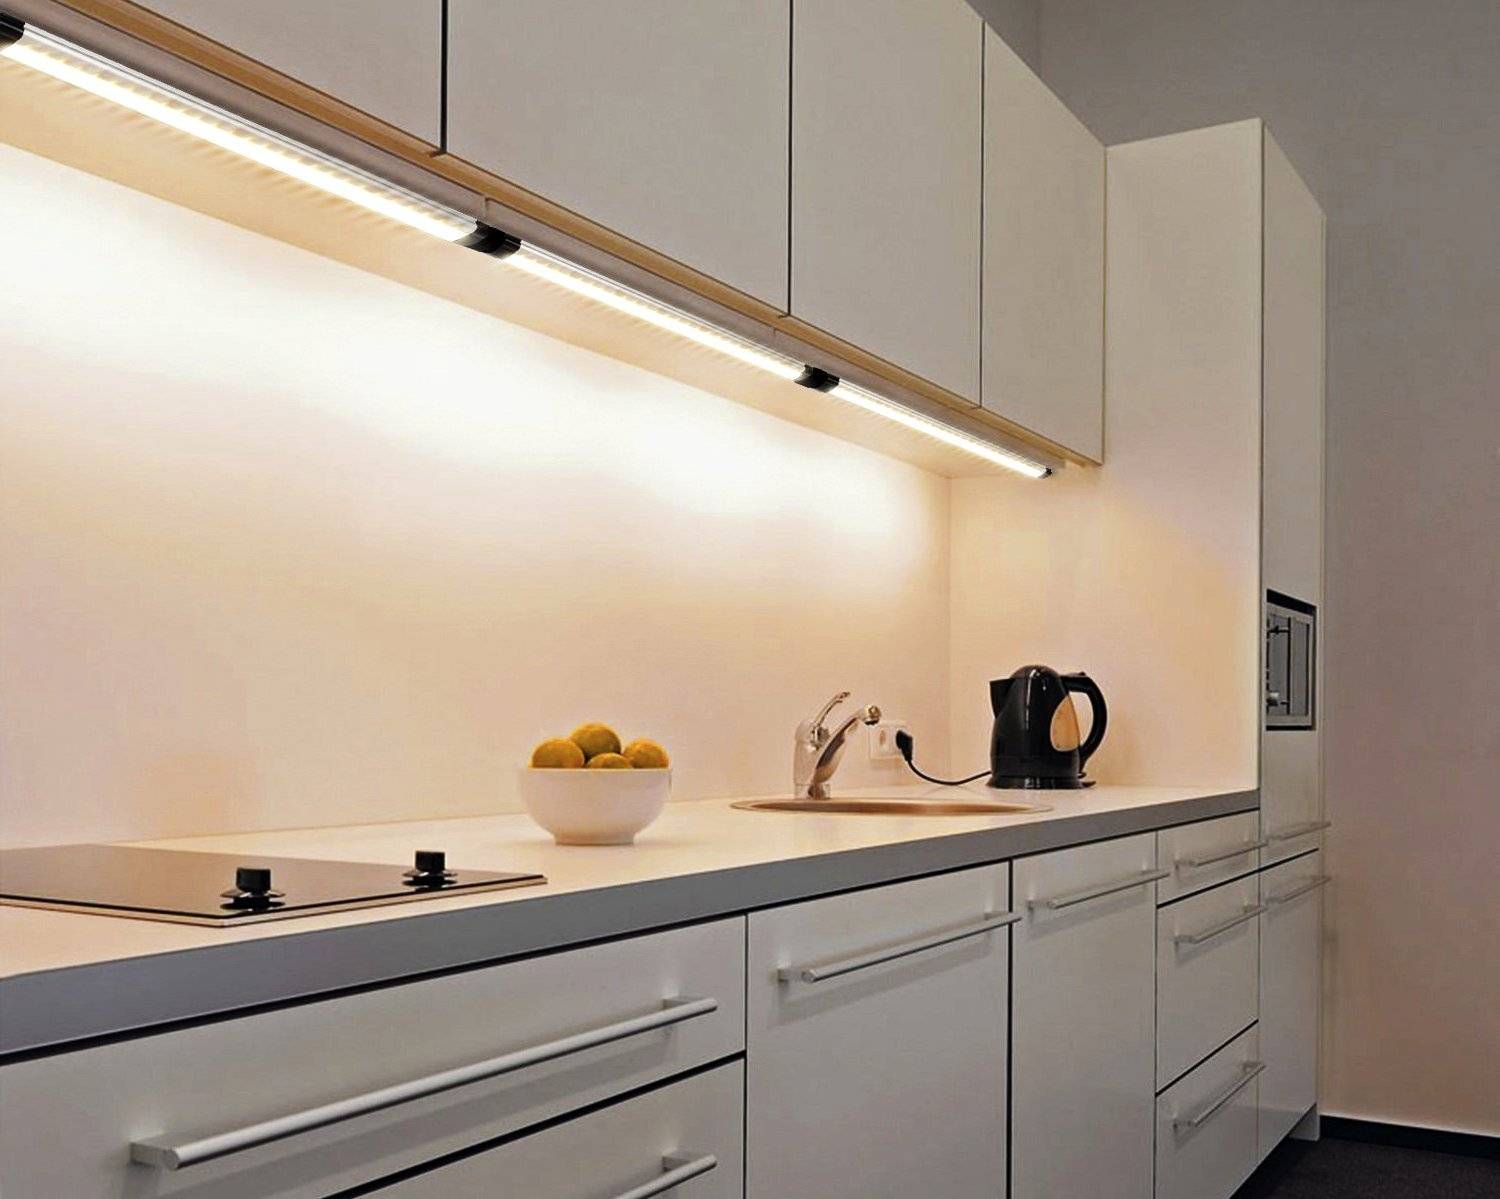 Как сделать подсветку на кухне под шкафчиками для рабочей зоны (инструкция+видео)